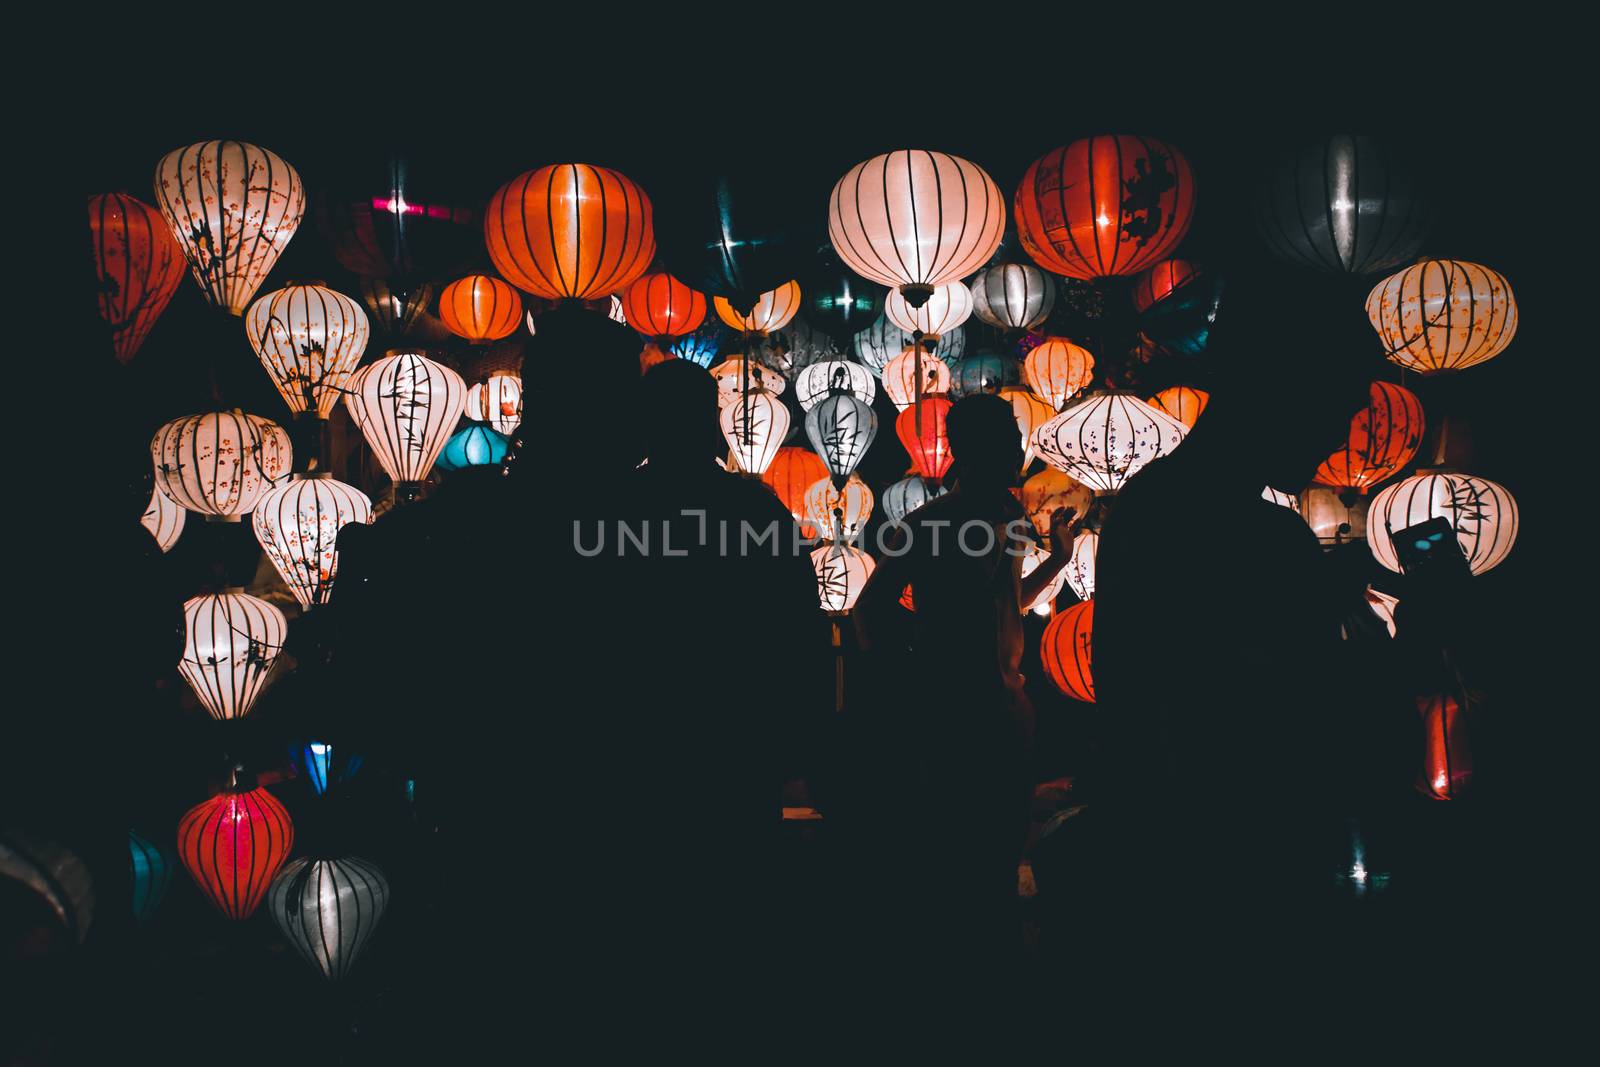 Lantern Festival in Hoi an Vietnam by Sonnet15